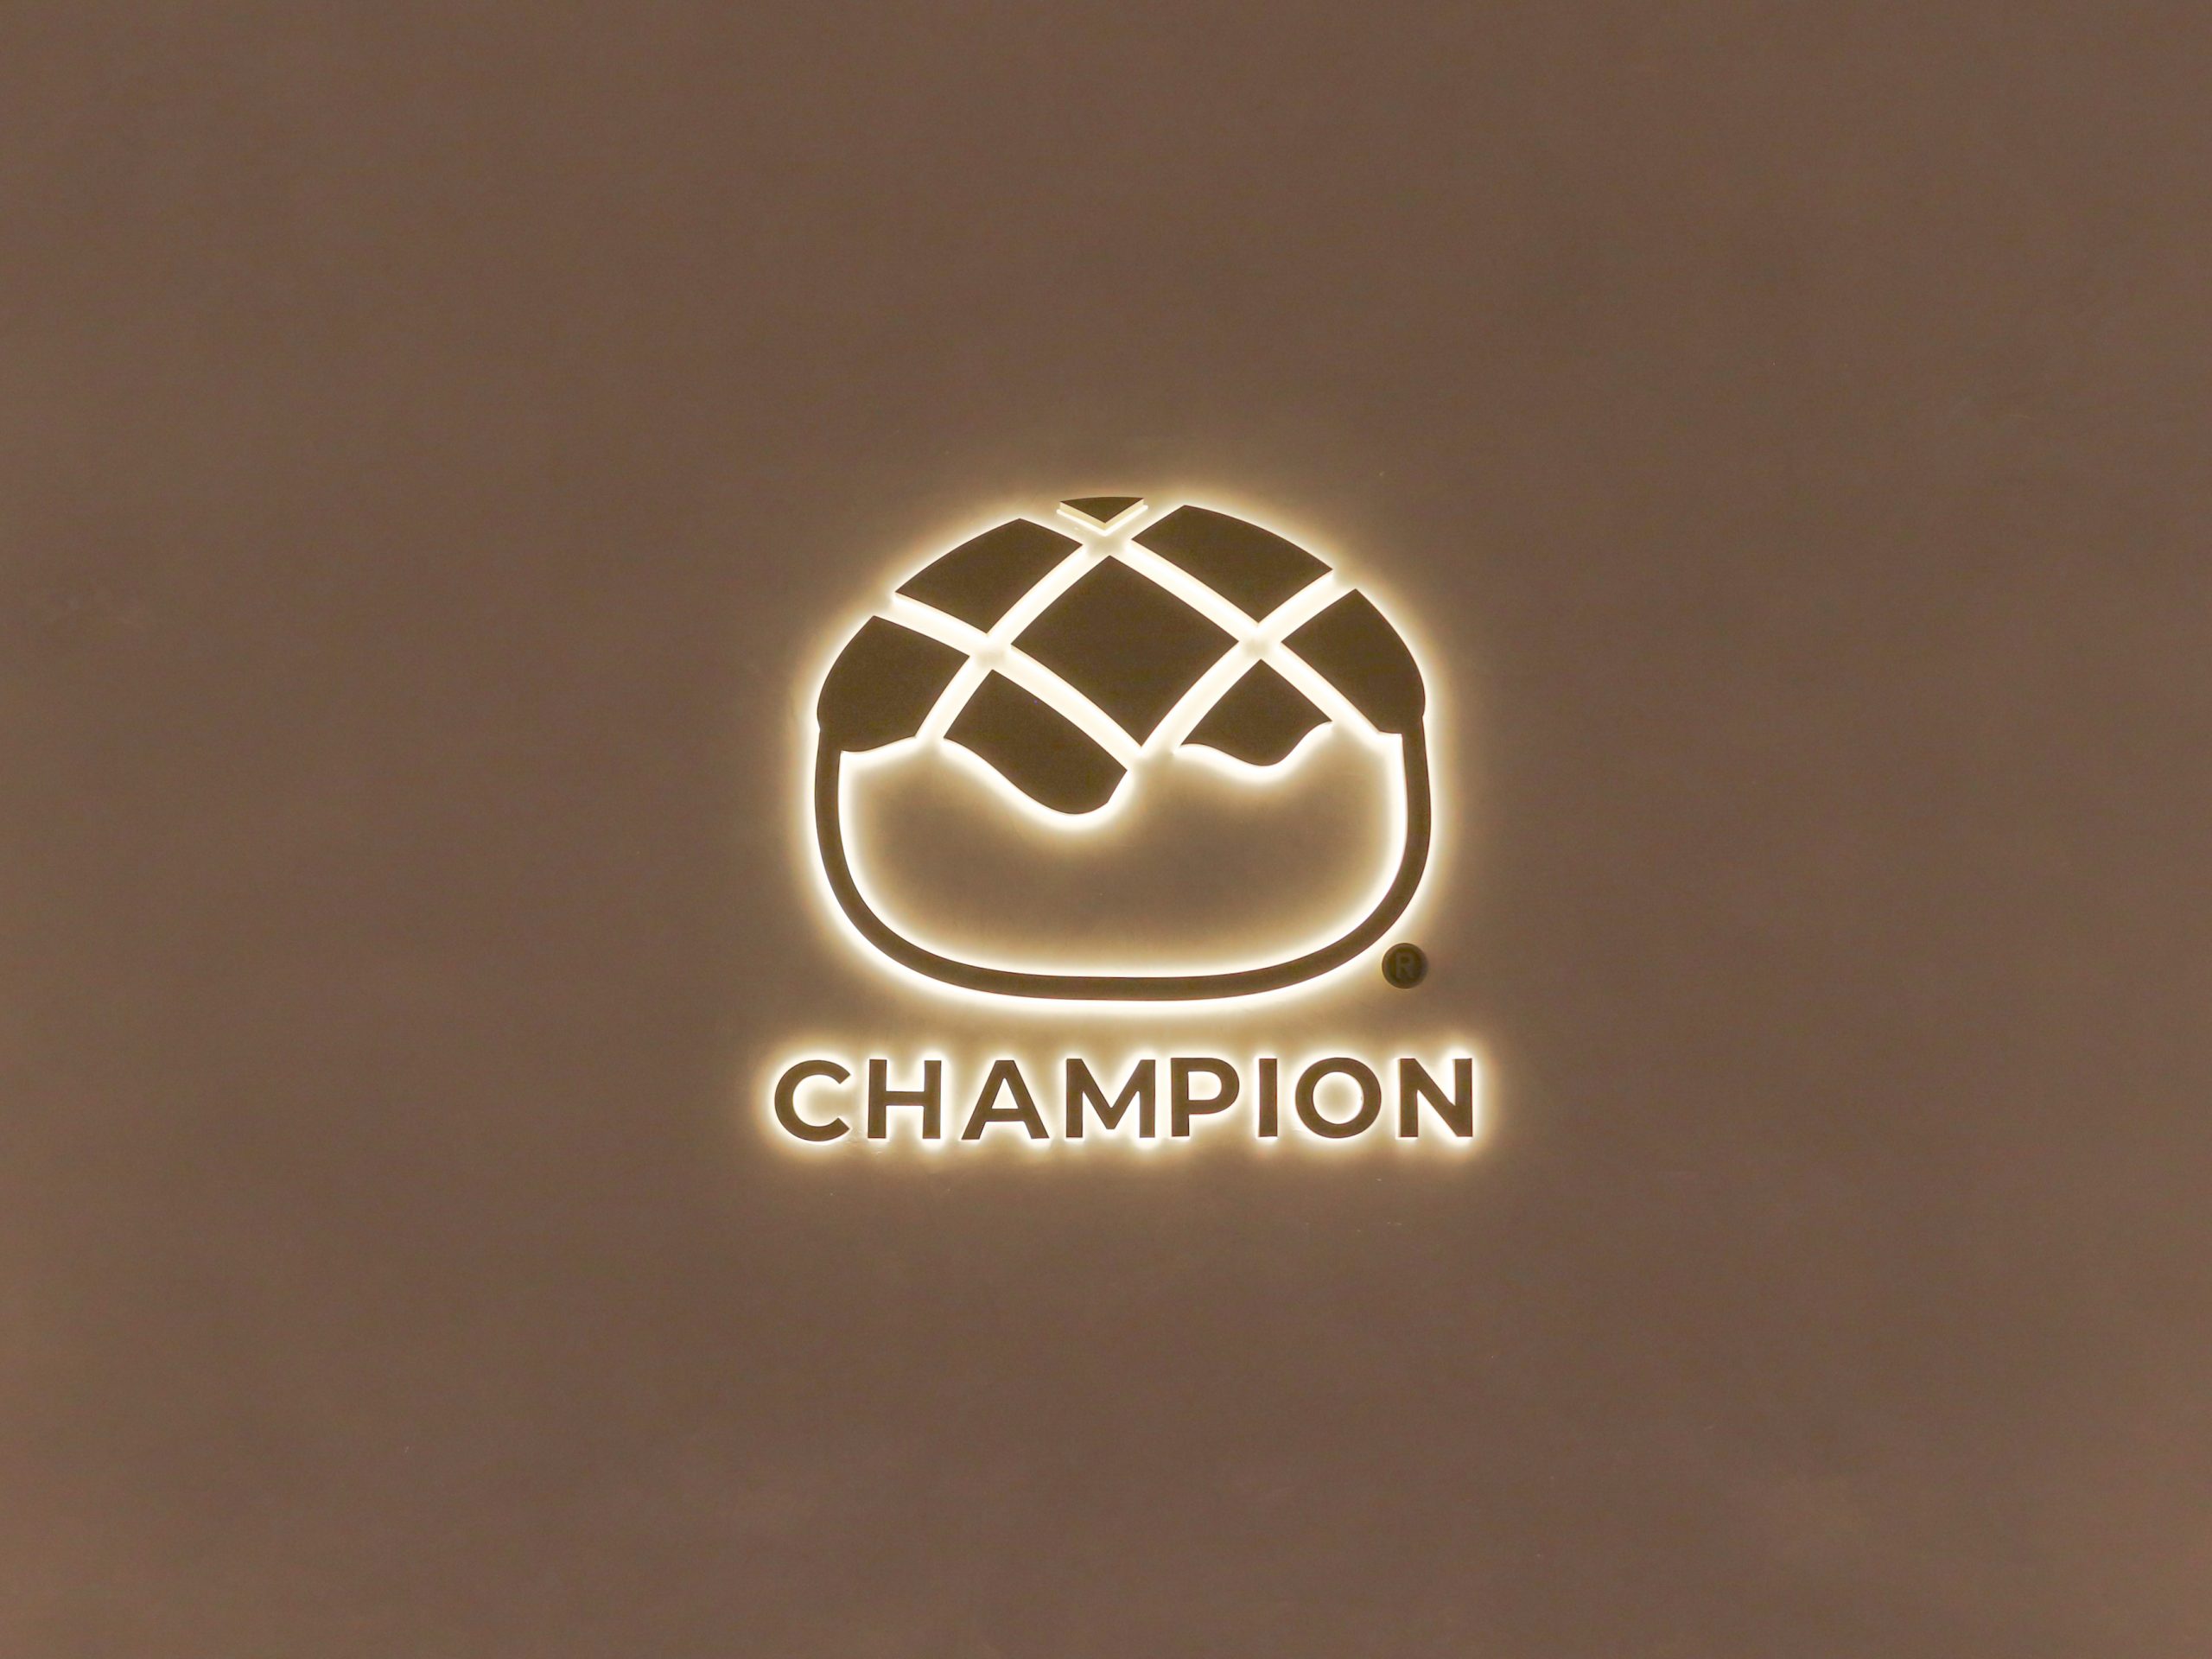 claire_three-new-cafes-tanjong-pagar-champion-bolo-bun-1-logo